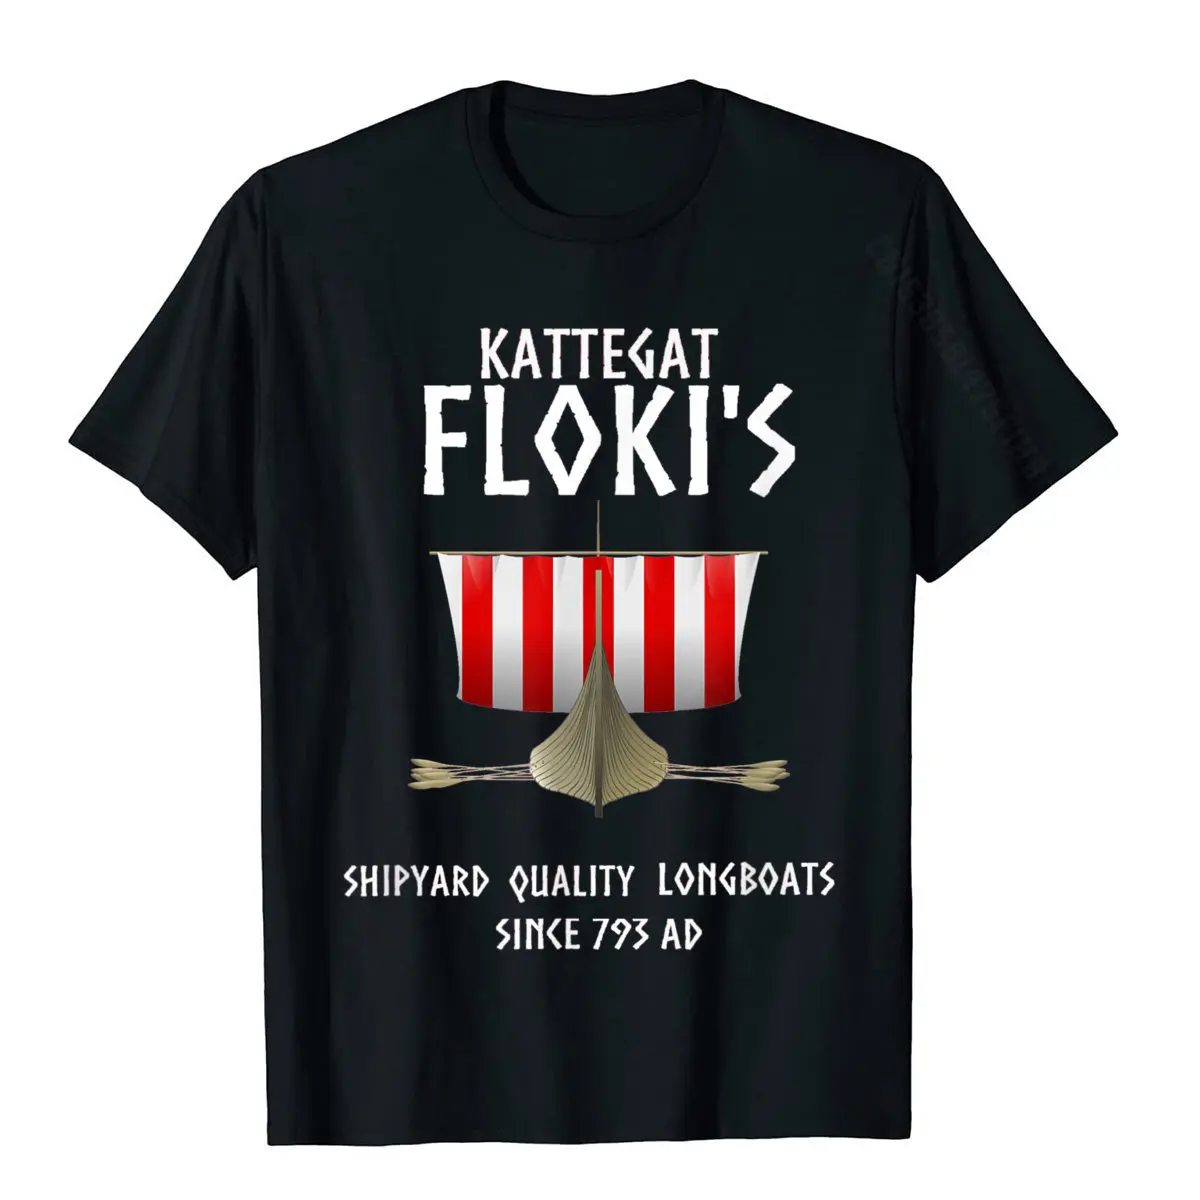 Viking Kattegat Floki T-Shirt For Viking Warriors Lover Men Company Customized T Shirt Cotton Top T-Shirts Comfortable